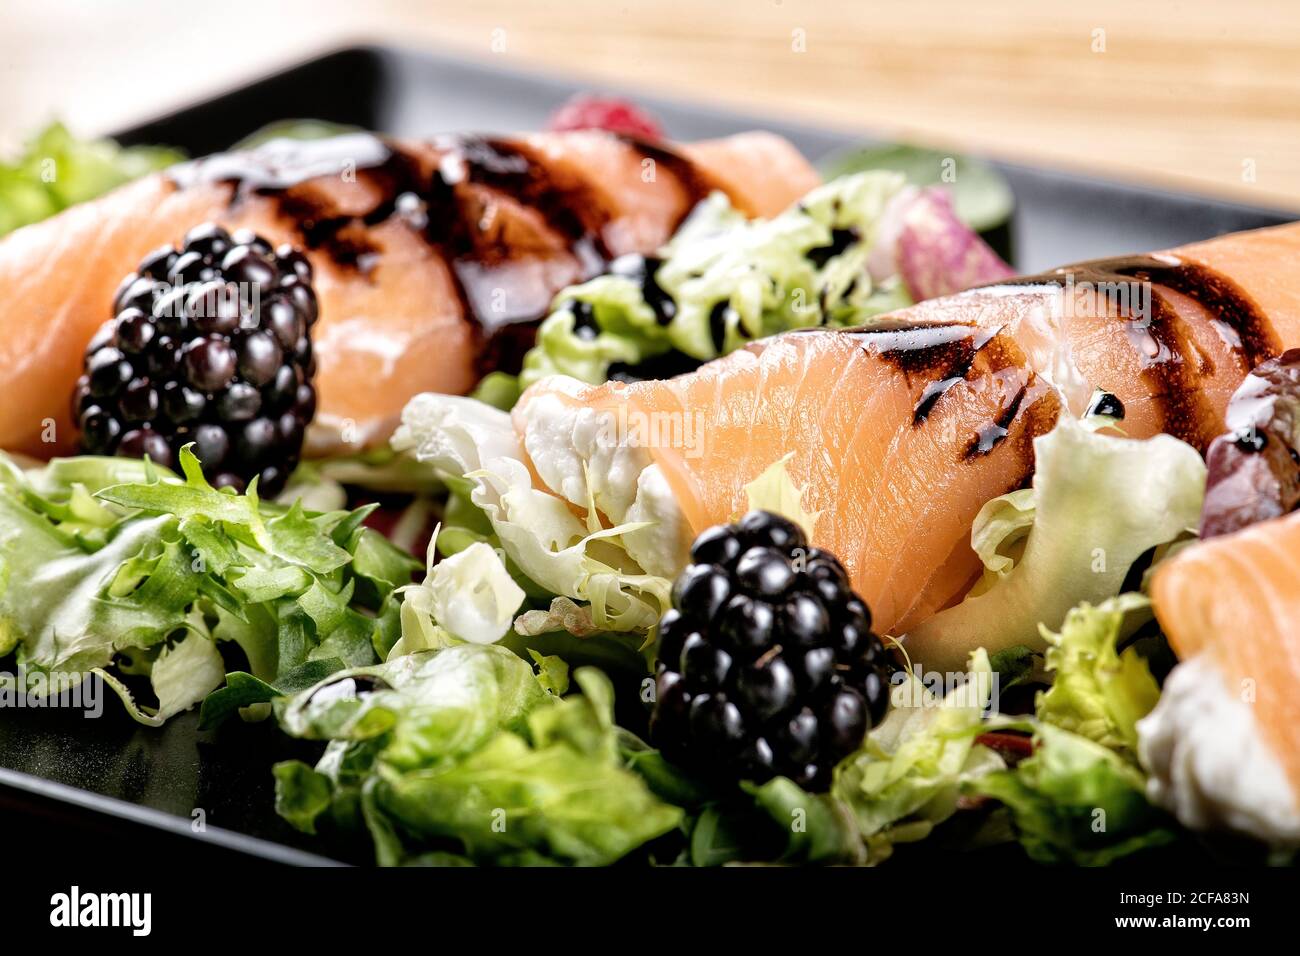 Nahaufnahme von schmackhaften Lachsbrötchen gefüllt mit Frischkäse und Garniert mit Sauce auf dem Teller mit frischem Salat serviert und Brombeeren Stockfoto